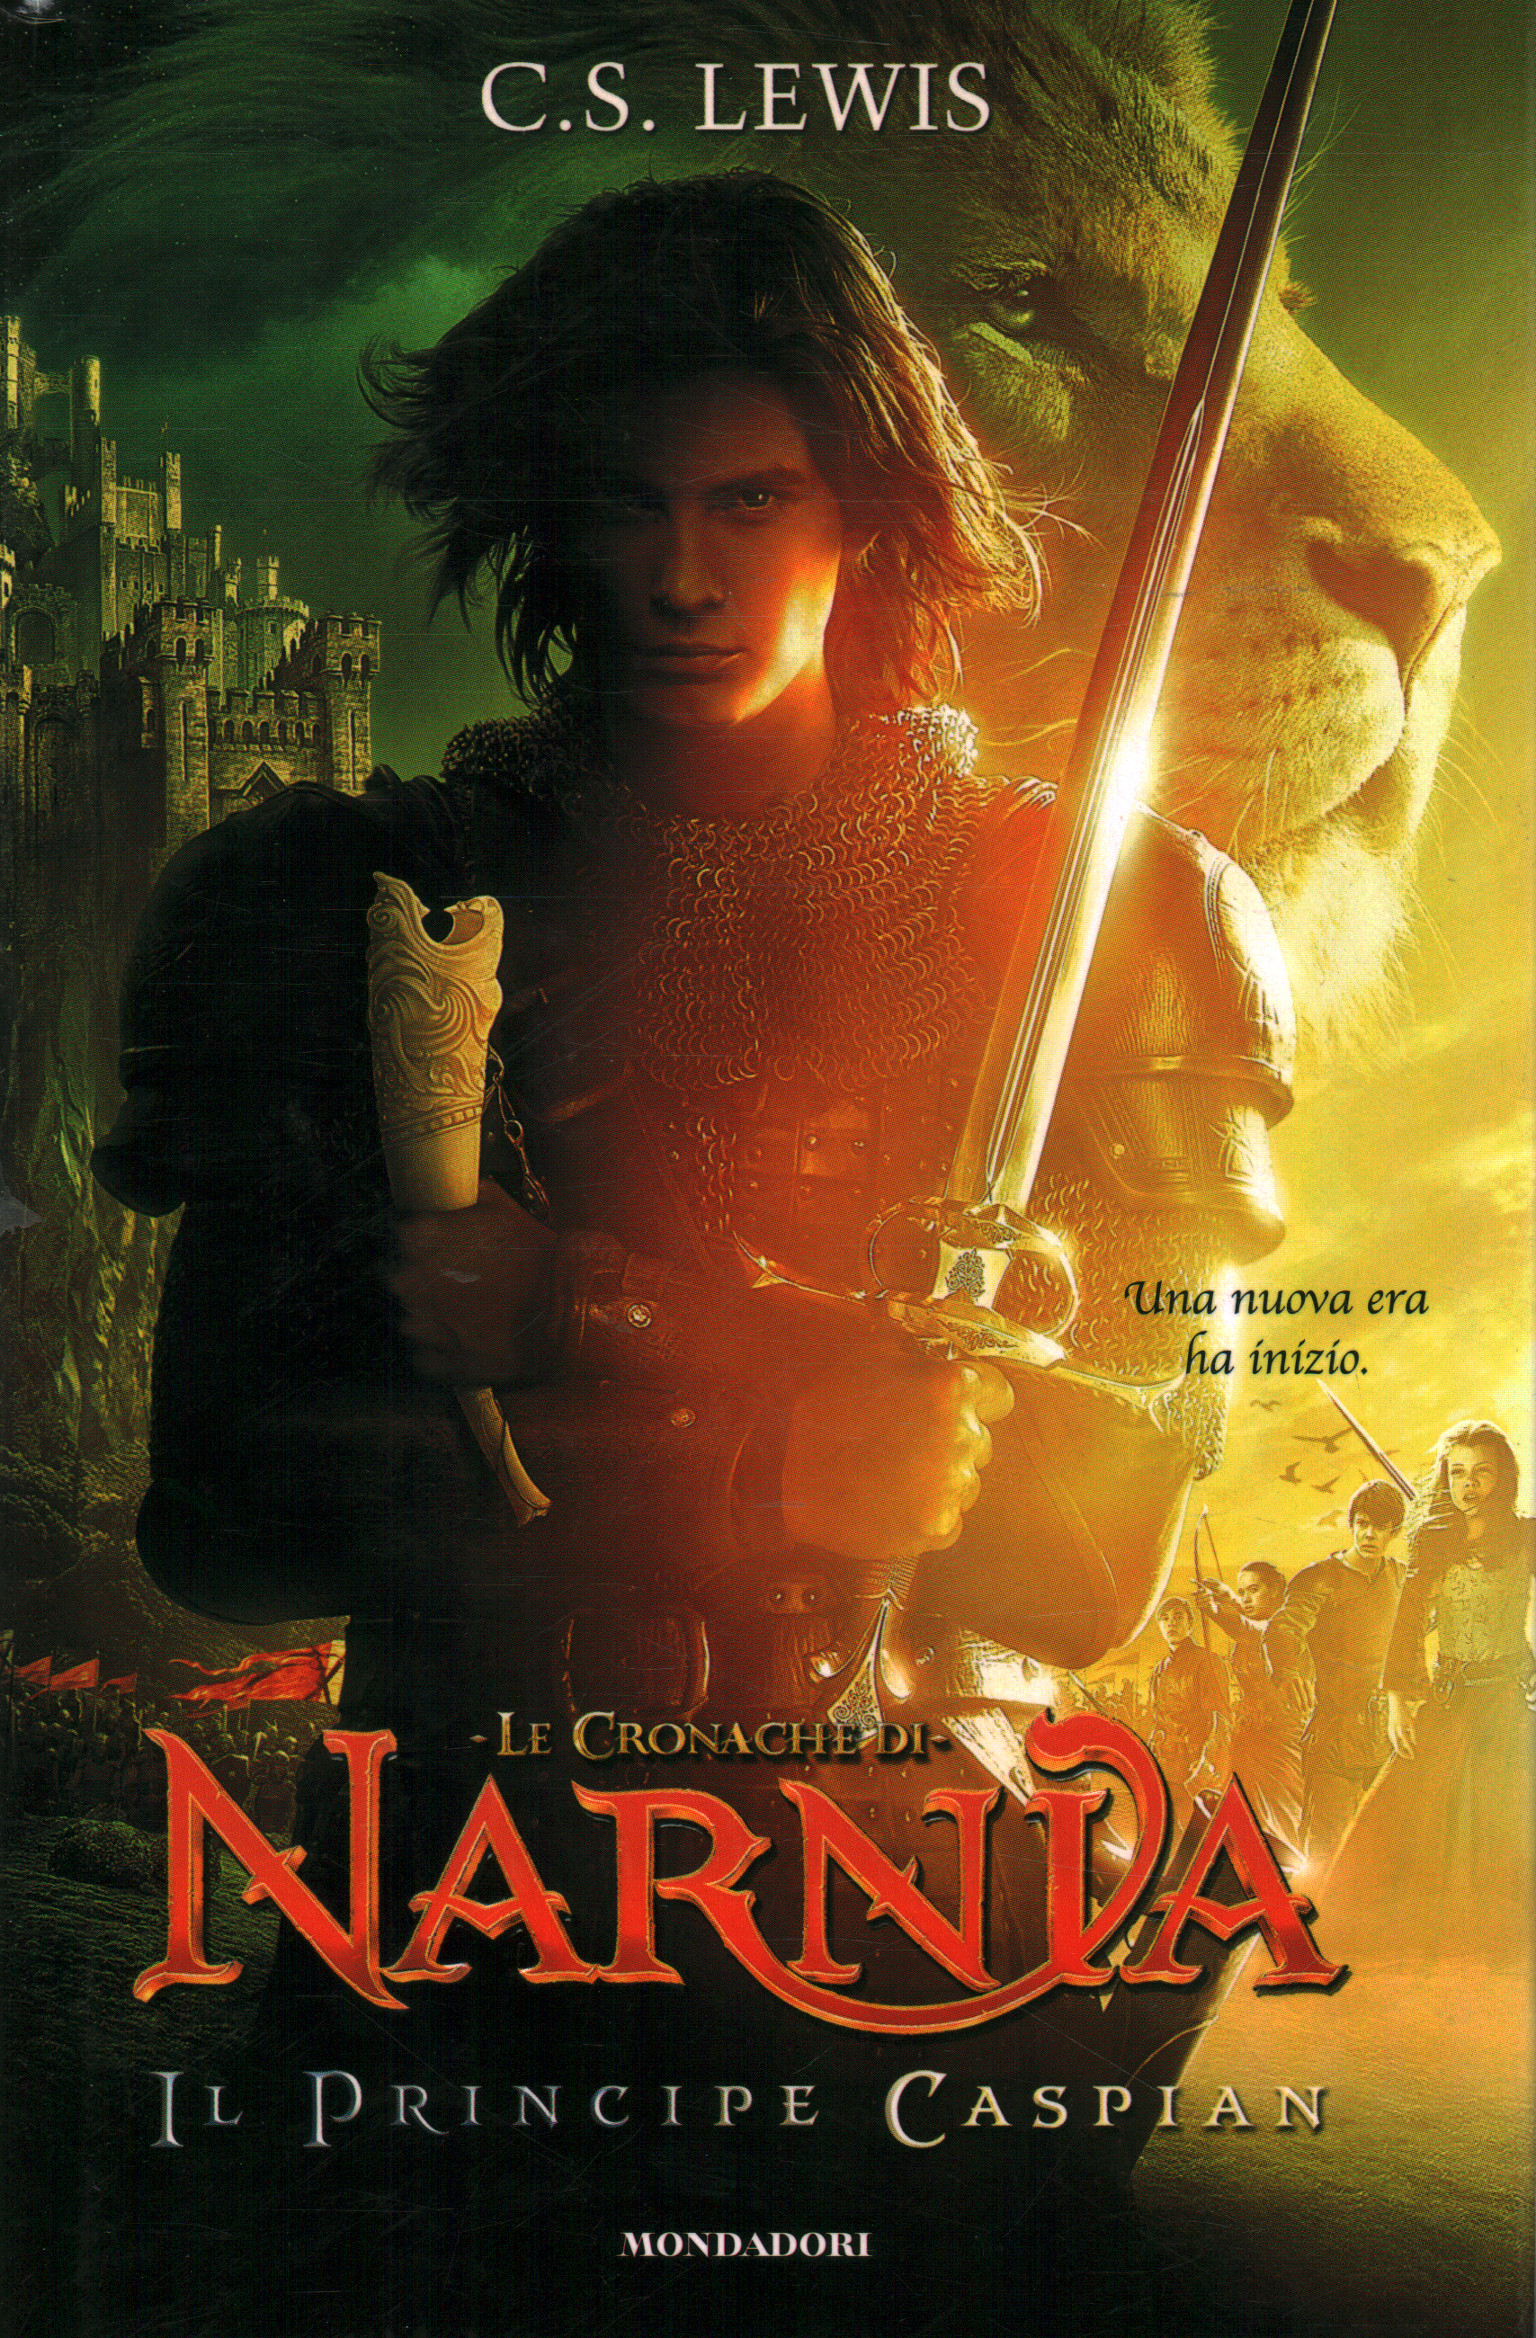 Les Chroniques de Narnia - Prince Caspian, C.S. Louis